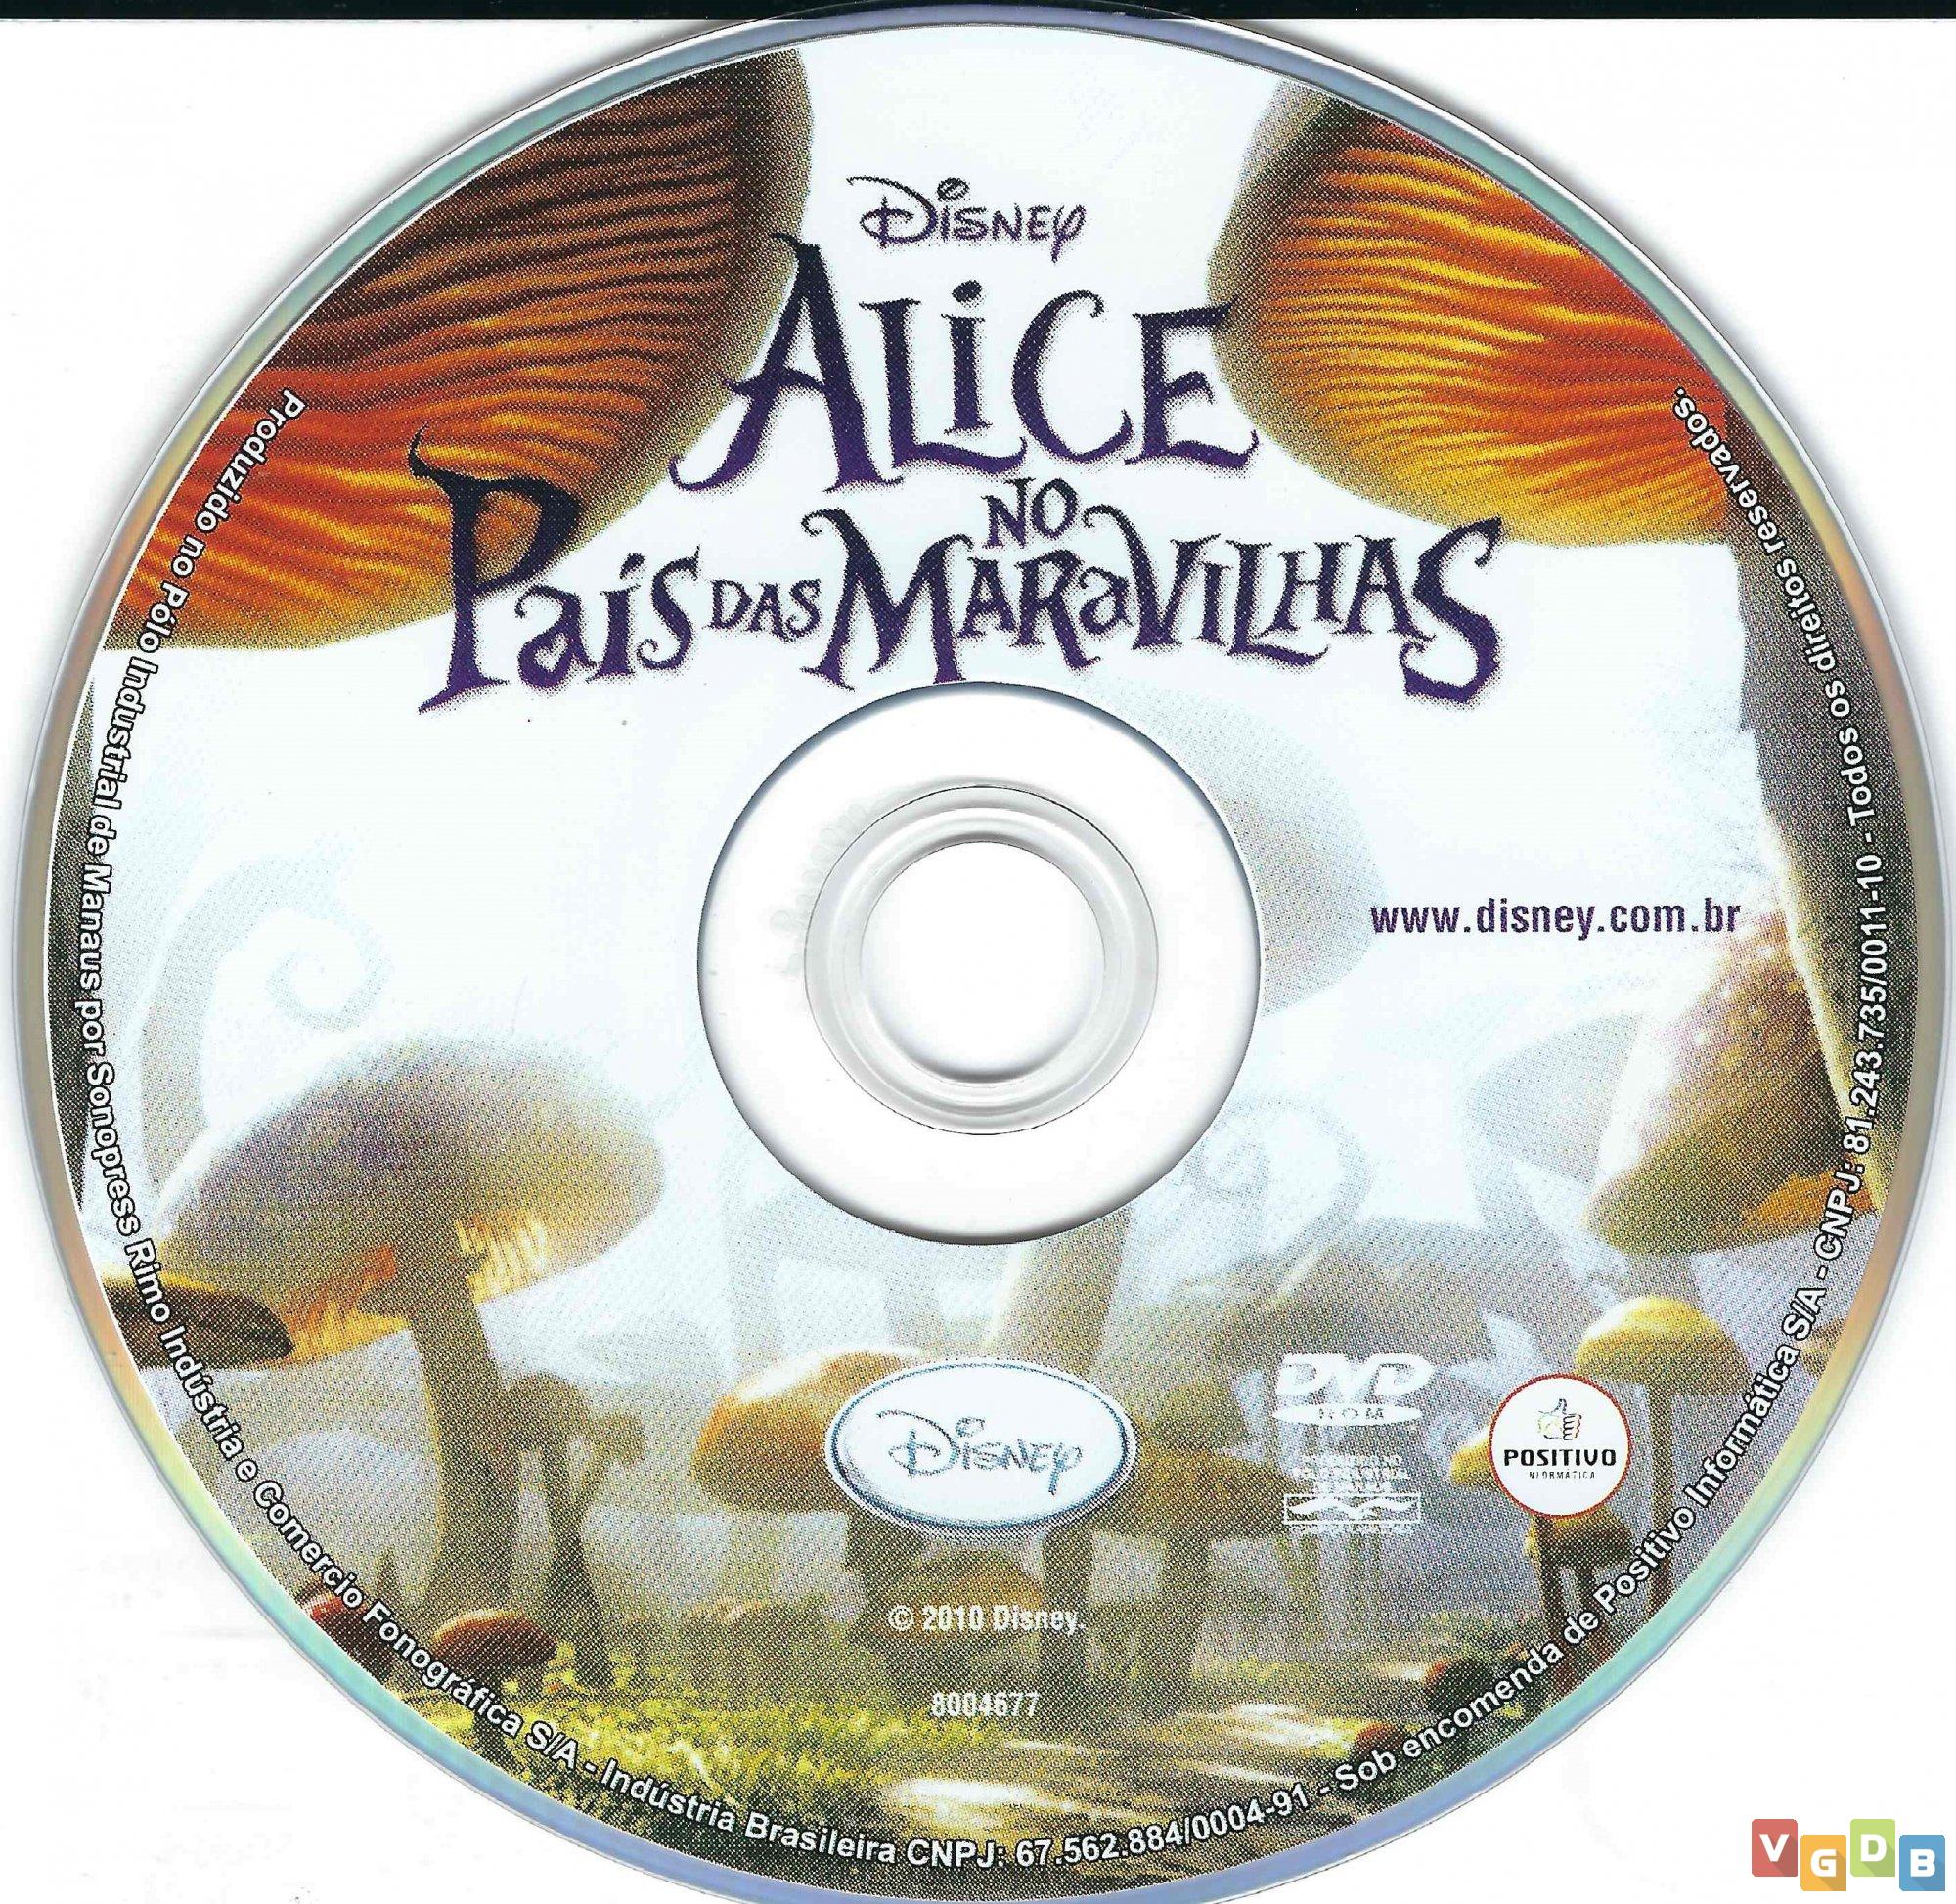 Alice no Pais das Maravilhas - VGDB - Vídeo Game Data Base